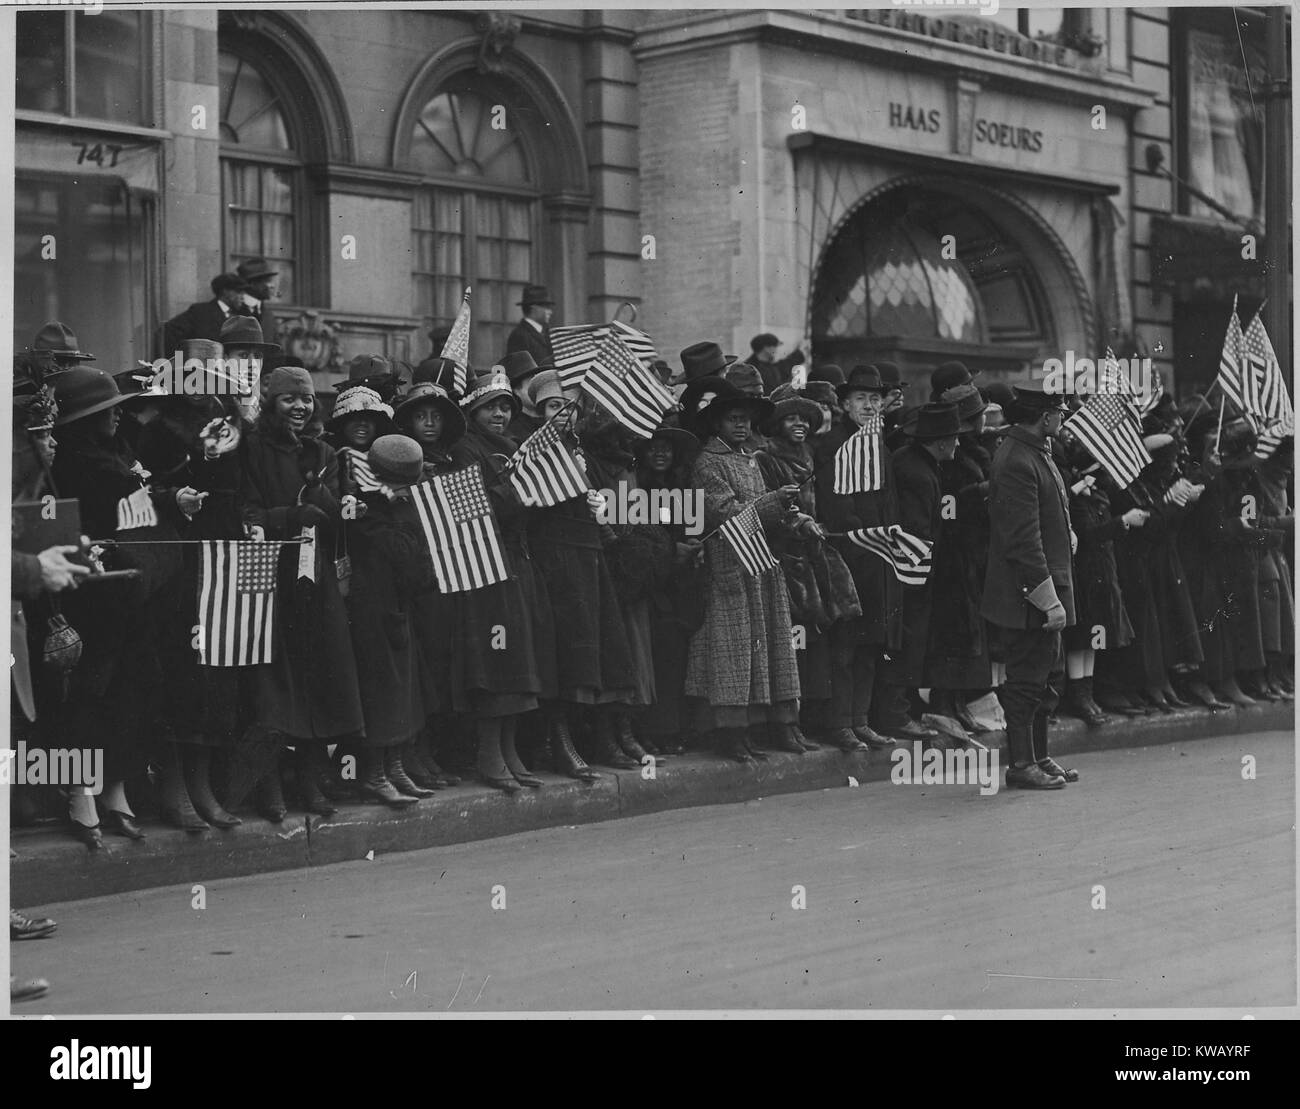 En souriant et en agitant des drapeaux des États-Unis tandis que de monde sur le trottoir de la rue, les badauds vêtus de manteaux et chapeaux attendent le défilé de la célèbre 369e d'infanterie américaine de l'Afrique, anciennement la 15e New York, New York, New York, 1917. L'image de courtoisie des Archives nationales. Banque D'Images